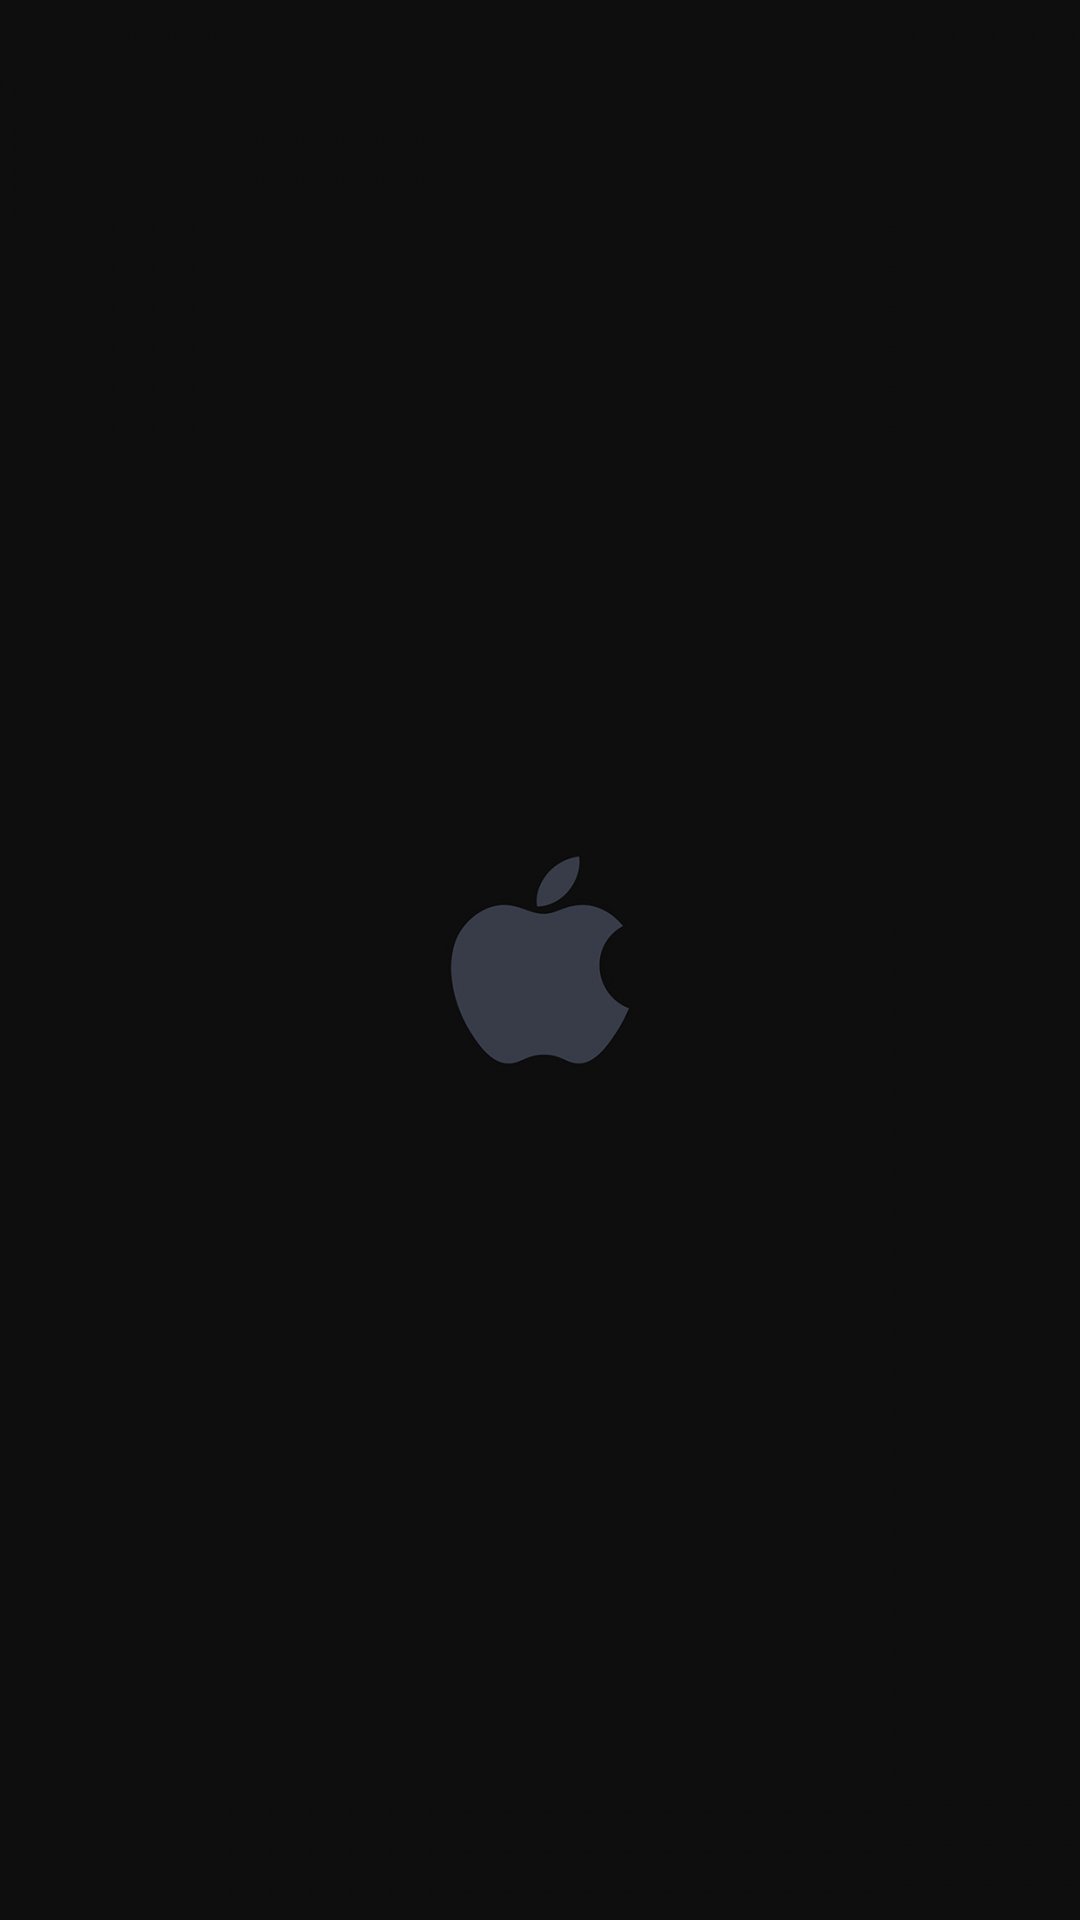 黑色背景下的苹果logo创意图片,高清图片,手机壁纸